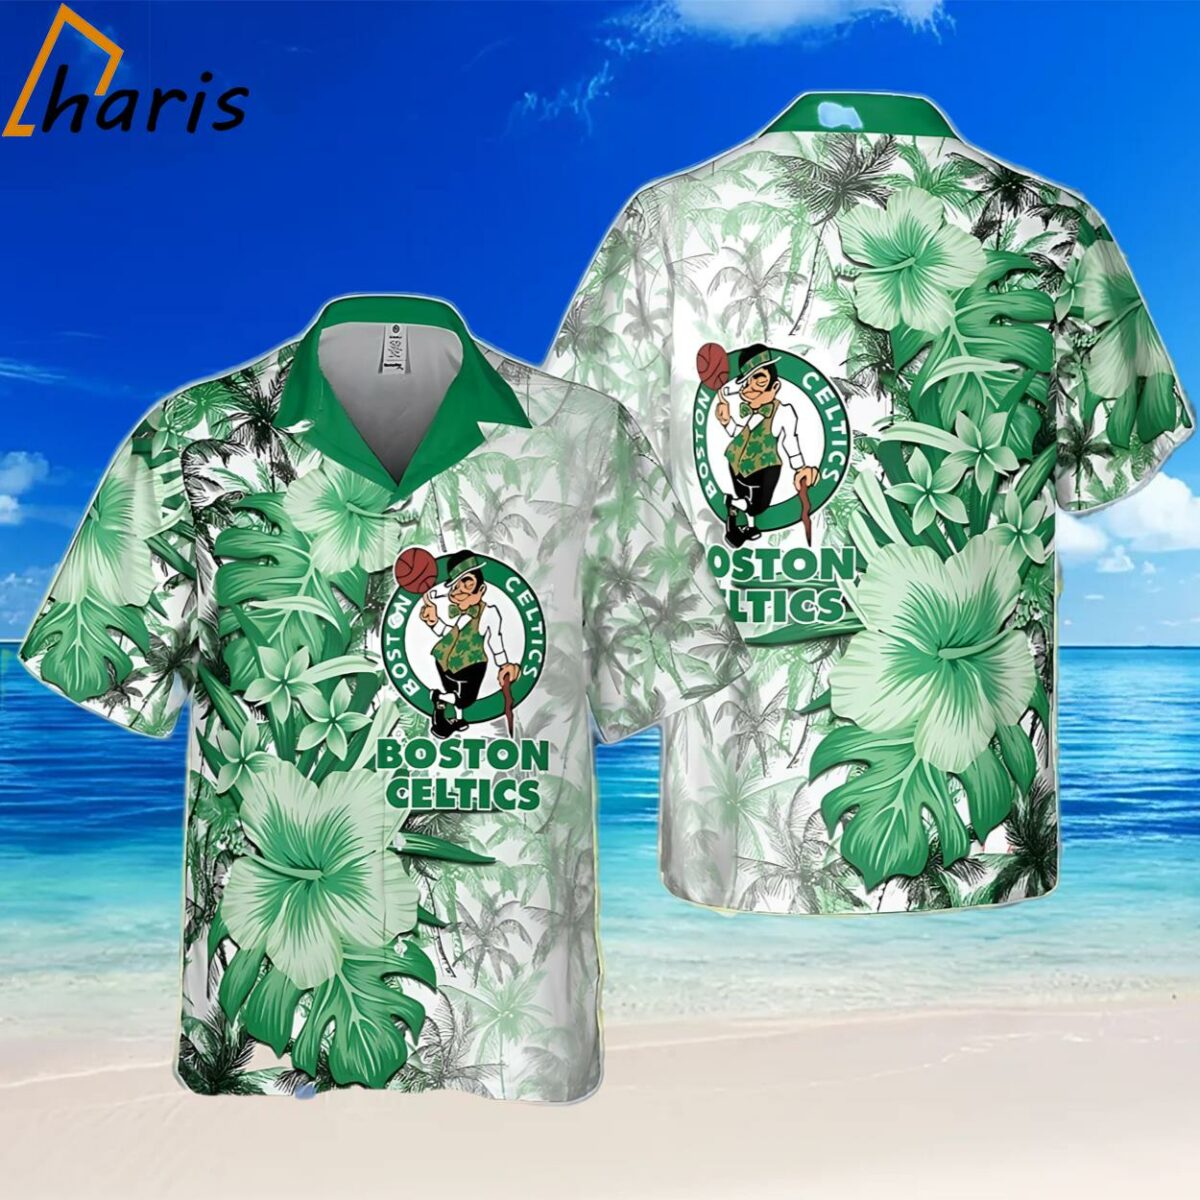 Boston Celtics National Basketball Association Hawaiian Shirt For Men Women 2 2